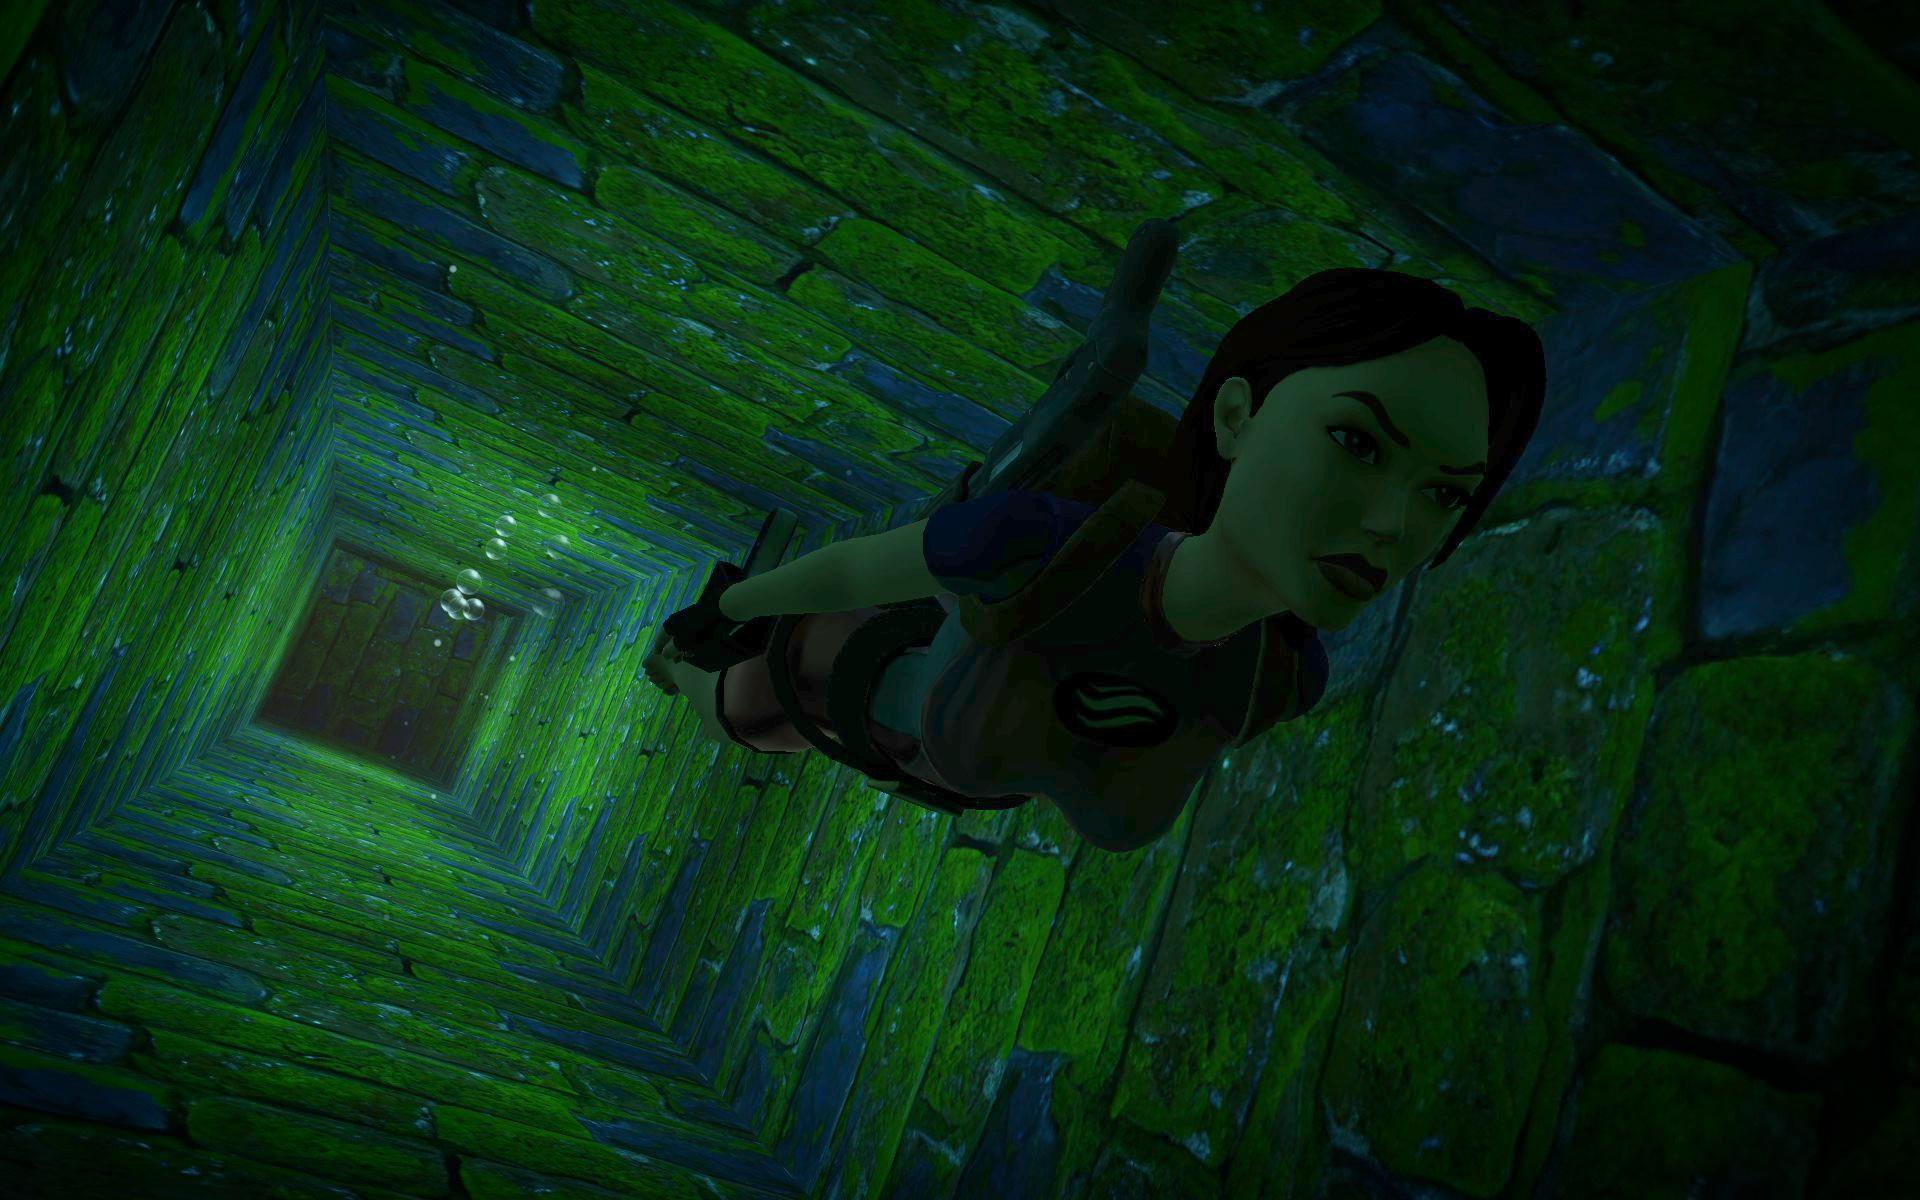 Photo Mode screenshot of Lara Croft swimming in Tomb Raider I-III Remastered.